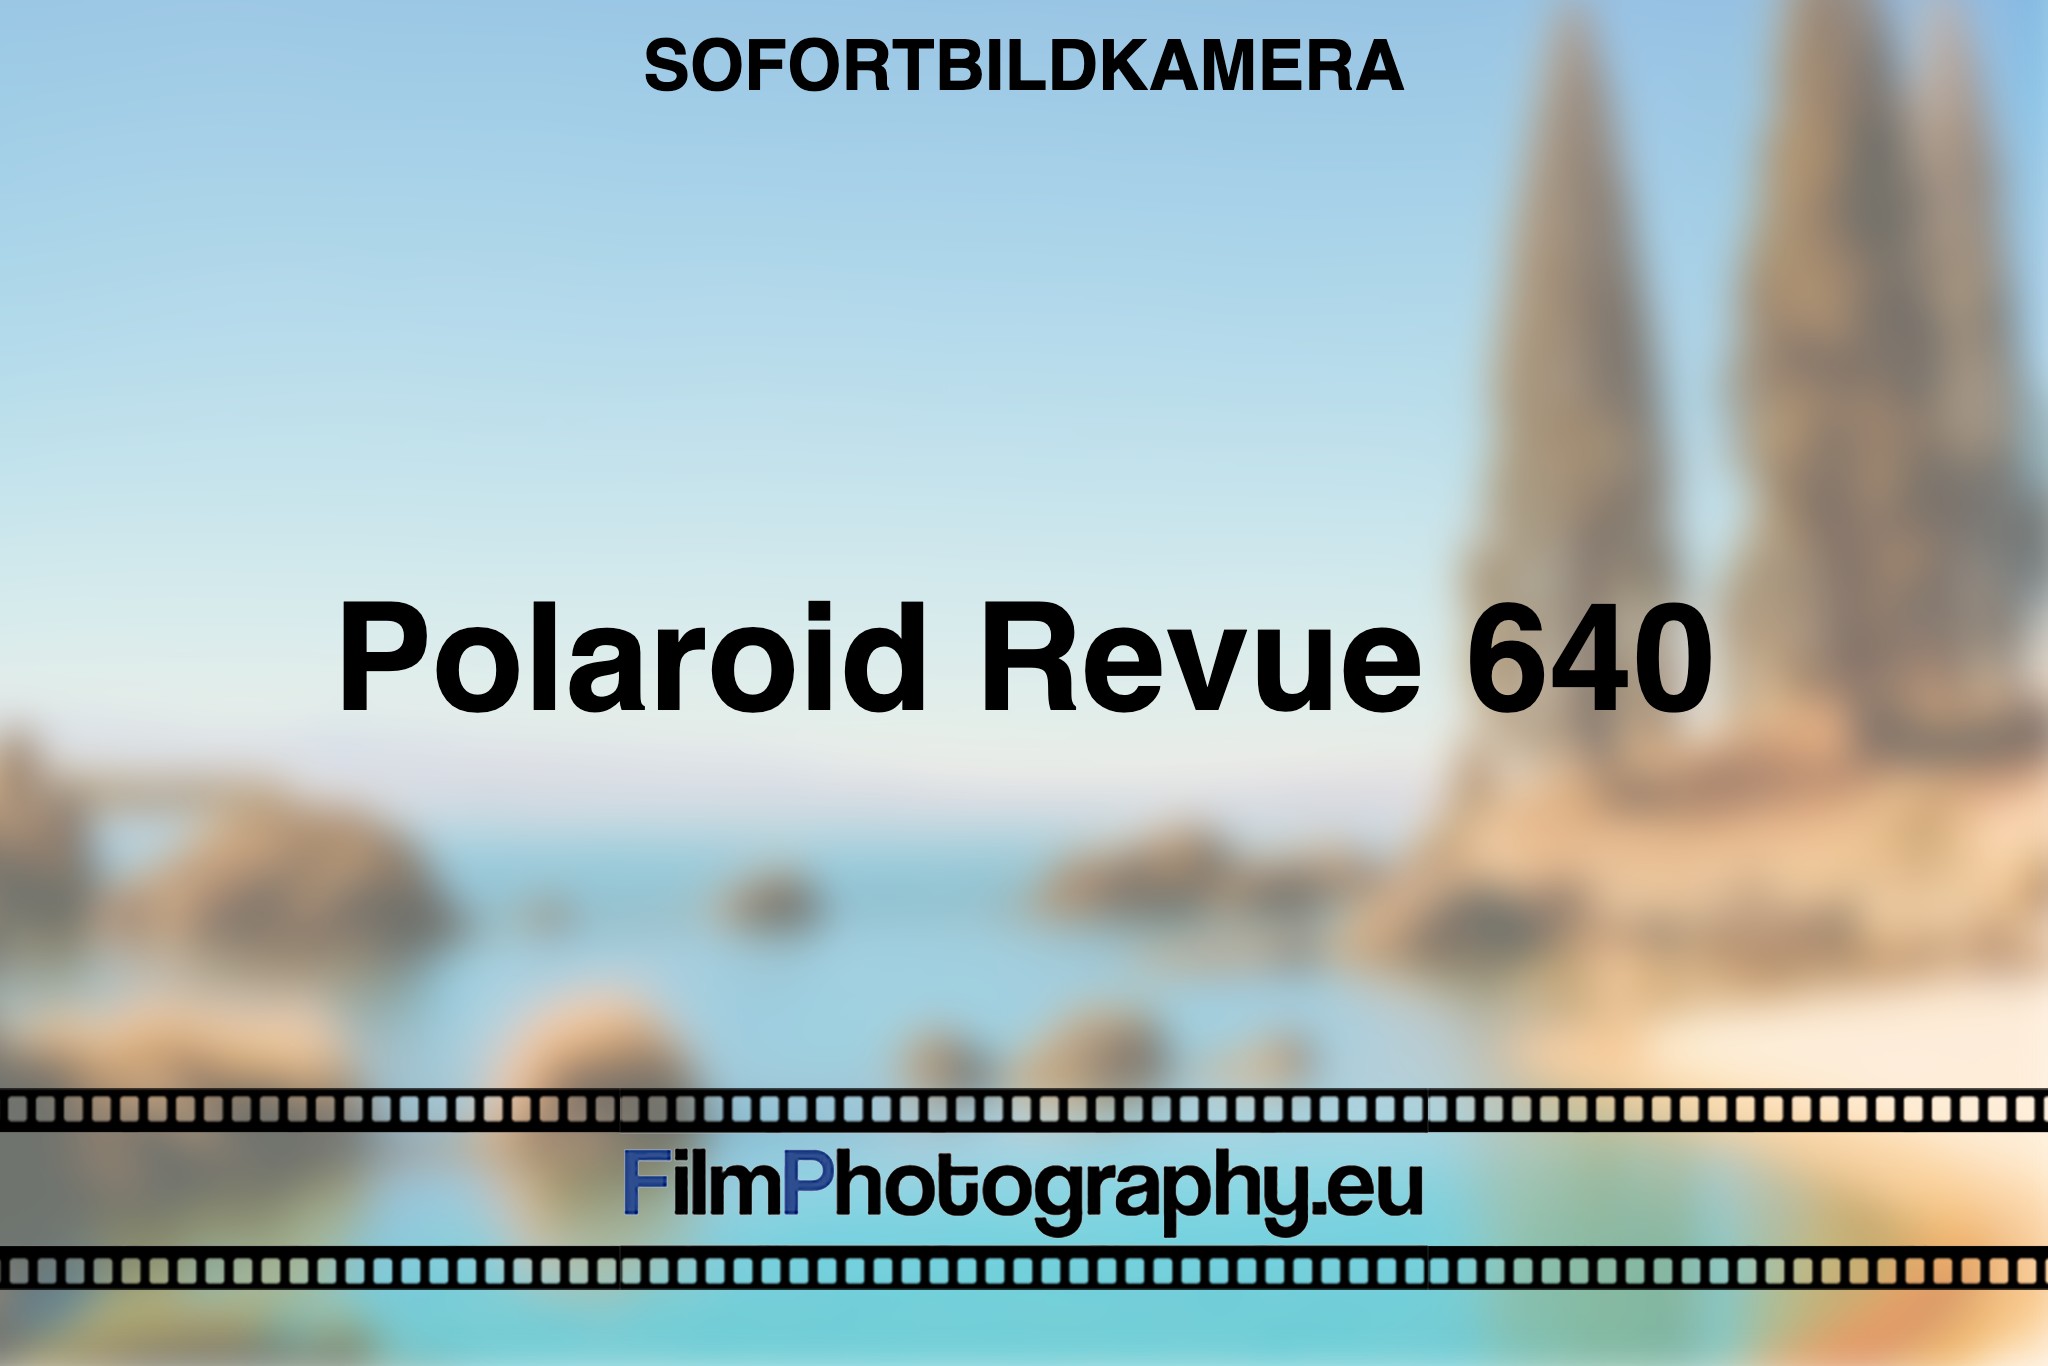 polaroid-revue-640-sofortbildkamera-bnv